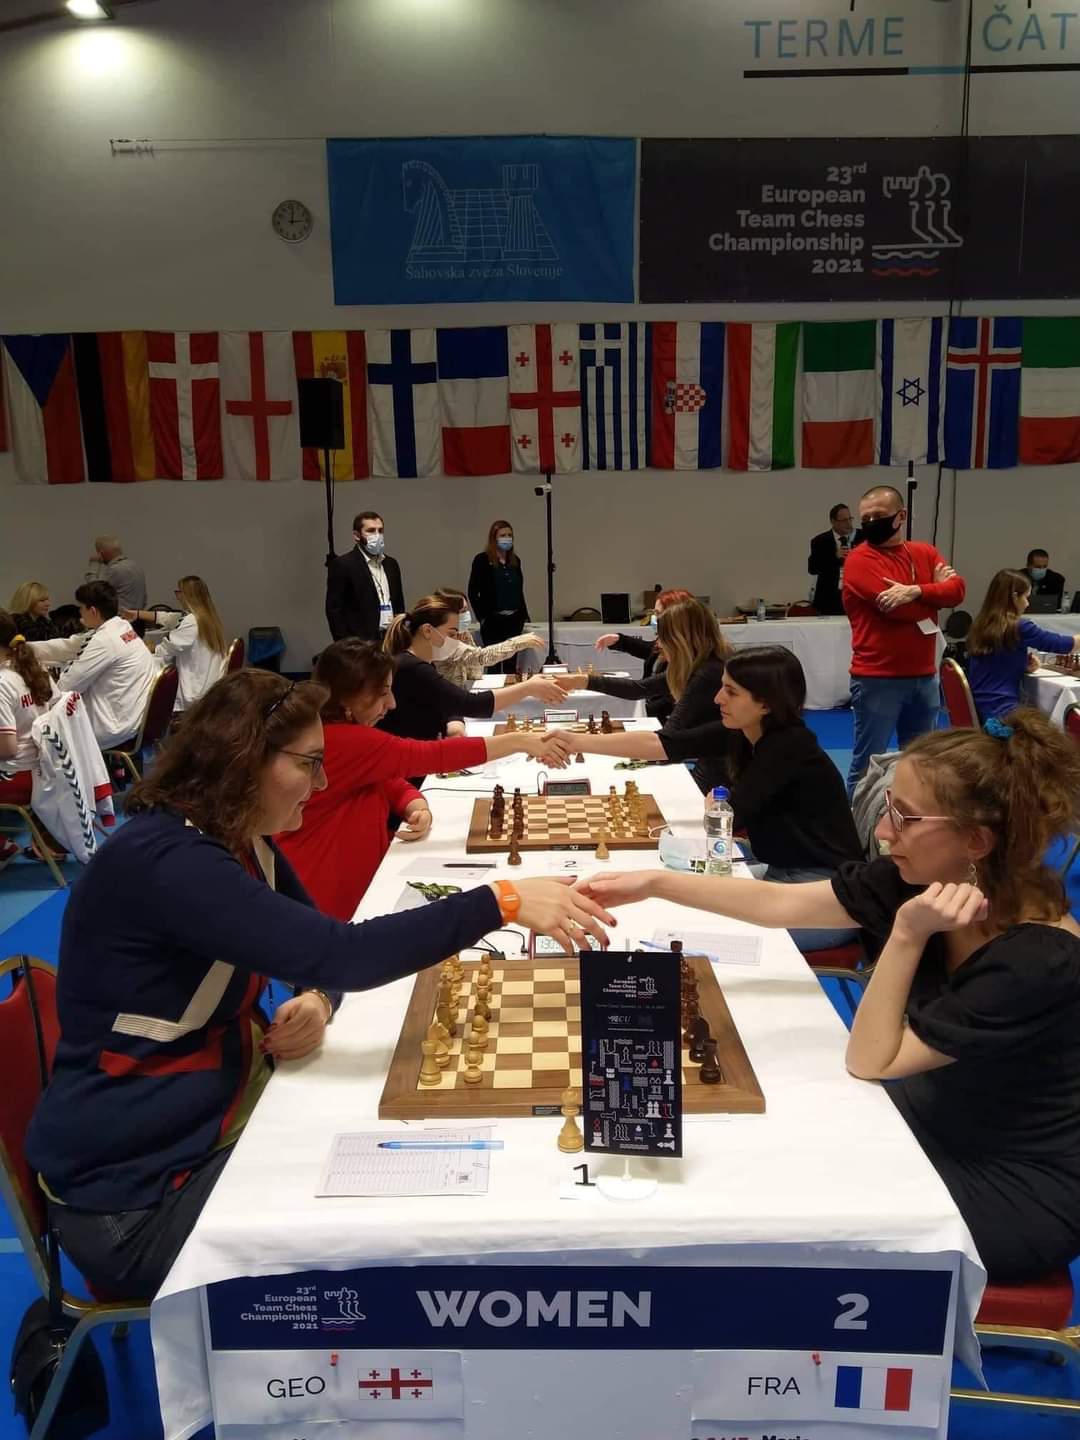 საქართველოს ქალთა ნაკრები ჭადრაკში,რომლის შემადგენლობაშიც ქუთაისელი სპორტსმენია,ევროპის ჩემპიონატის ვერცხლის პრიზიორია